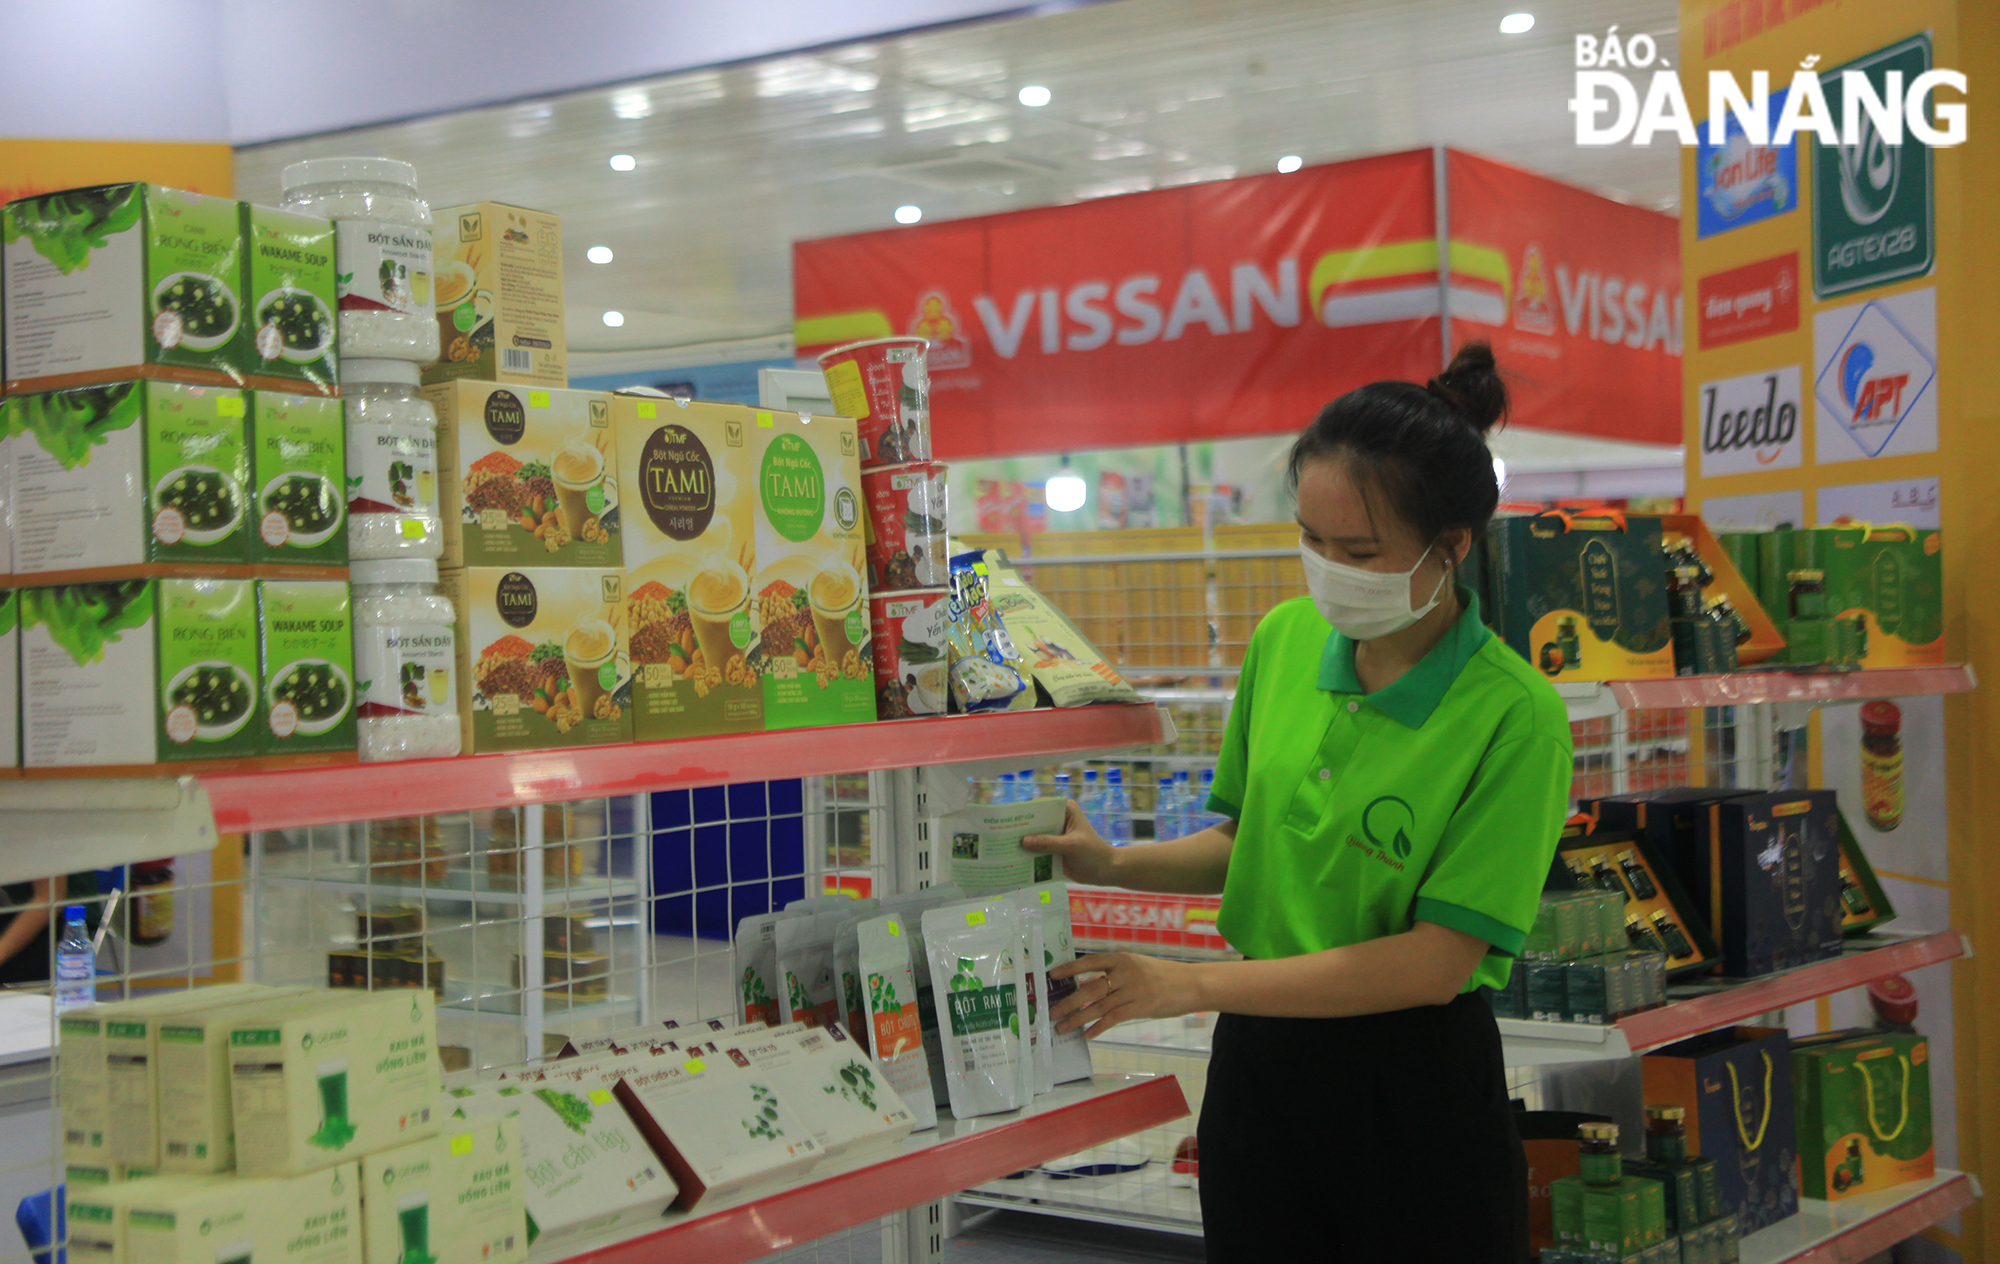 Hội chợ thu hút gần 150 gian hàng của hơn 120 đơn vị, doanh nghiệp đến từ thành phố Đà Nẵng và 17 tỉnh, thành phố trong cả nước tham gia. Ảnh: CHIẾN THẮNG